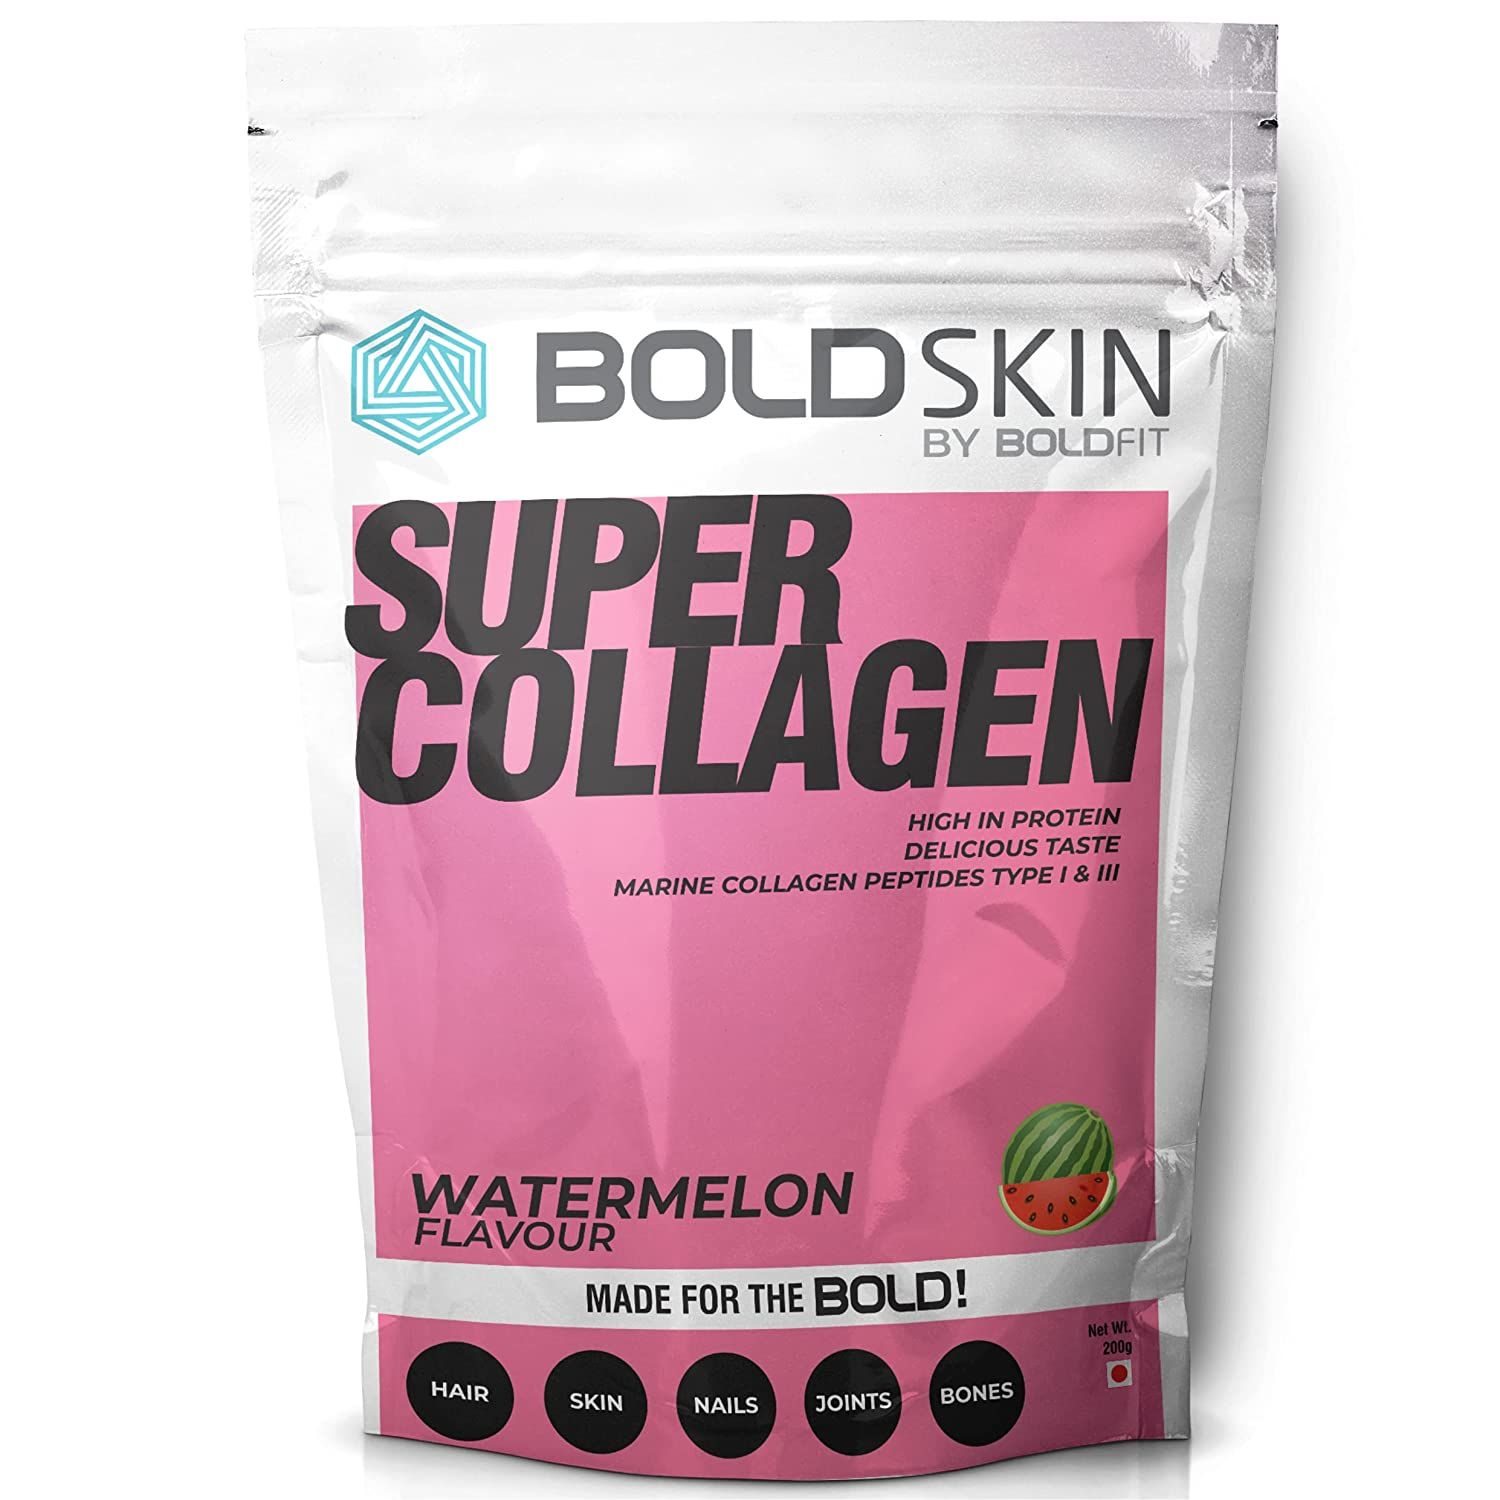 Boldskin Collagen Supplement For Women & Men Image